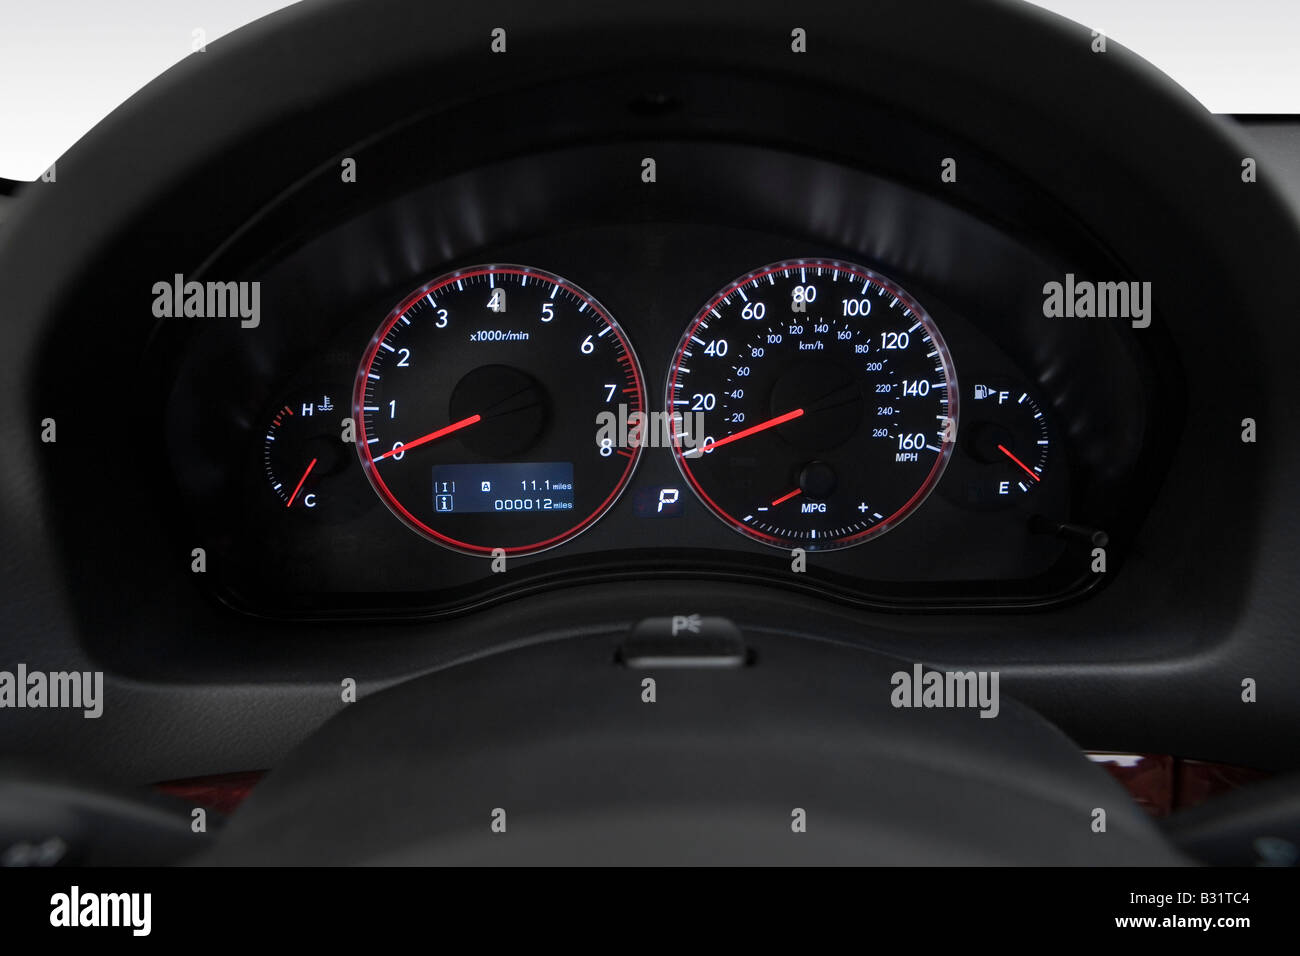 2009 Subaru Legacy 2.5 GT en rouge - Compteur/compte-tours Banque D'Images